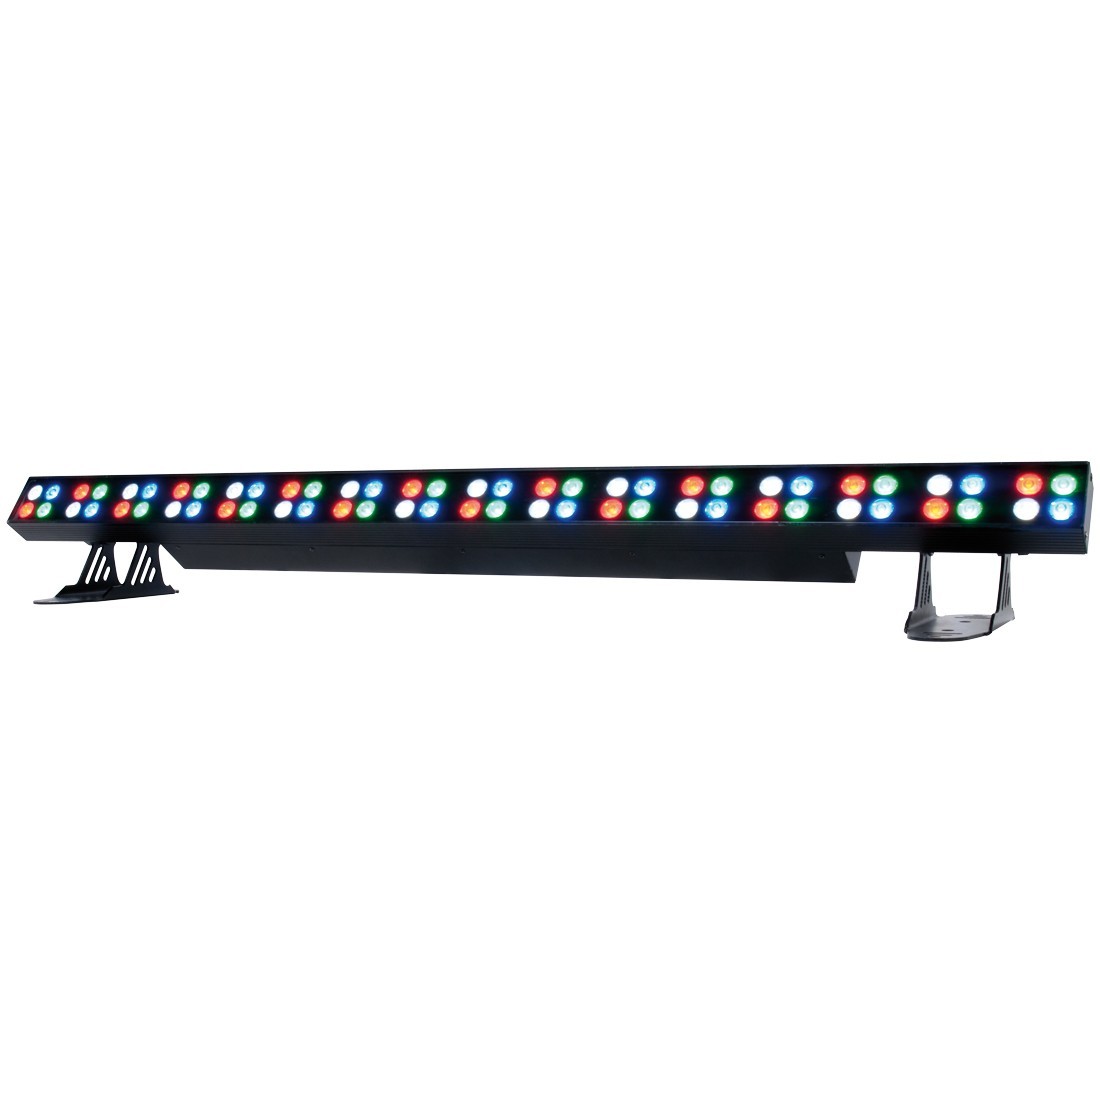 Прожекторы и светильники Elation ELED Strip RGBW 18 светодиодов par light stage lamp освещение поддерживается dmx512 звуковая активация master slave стробоскопический режим